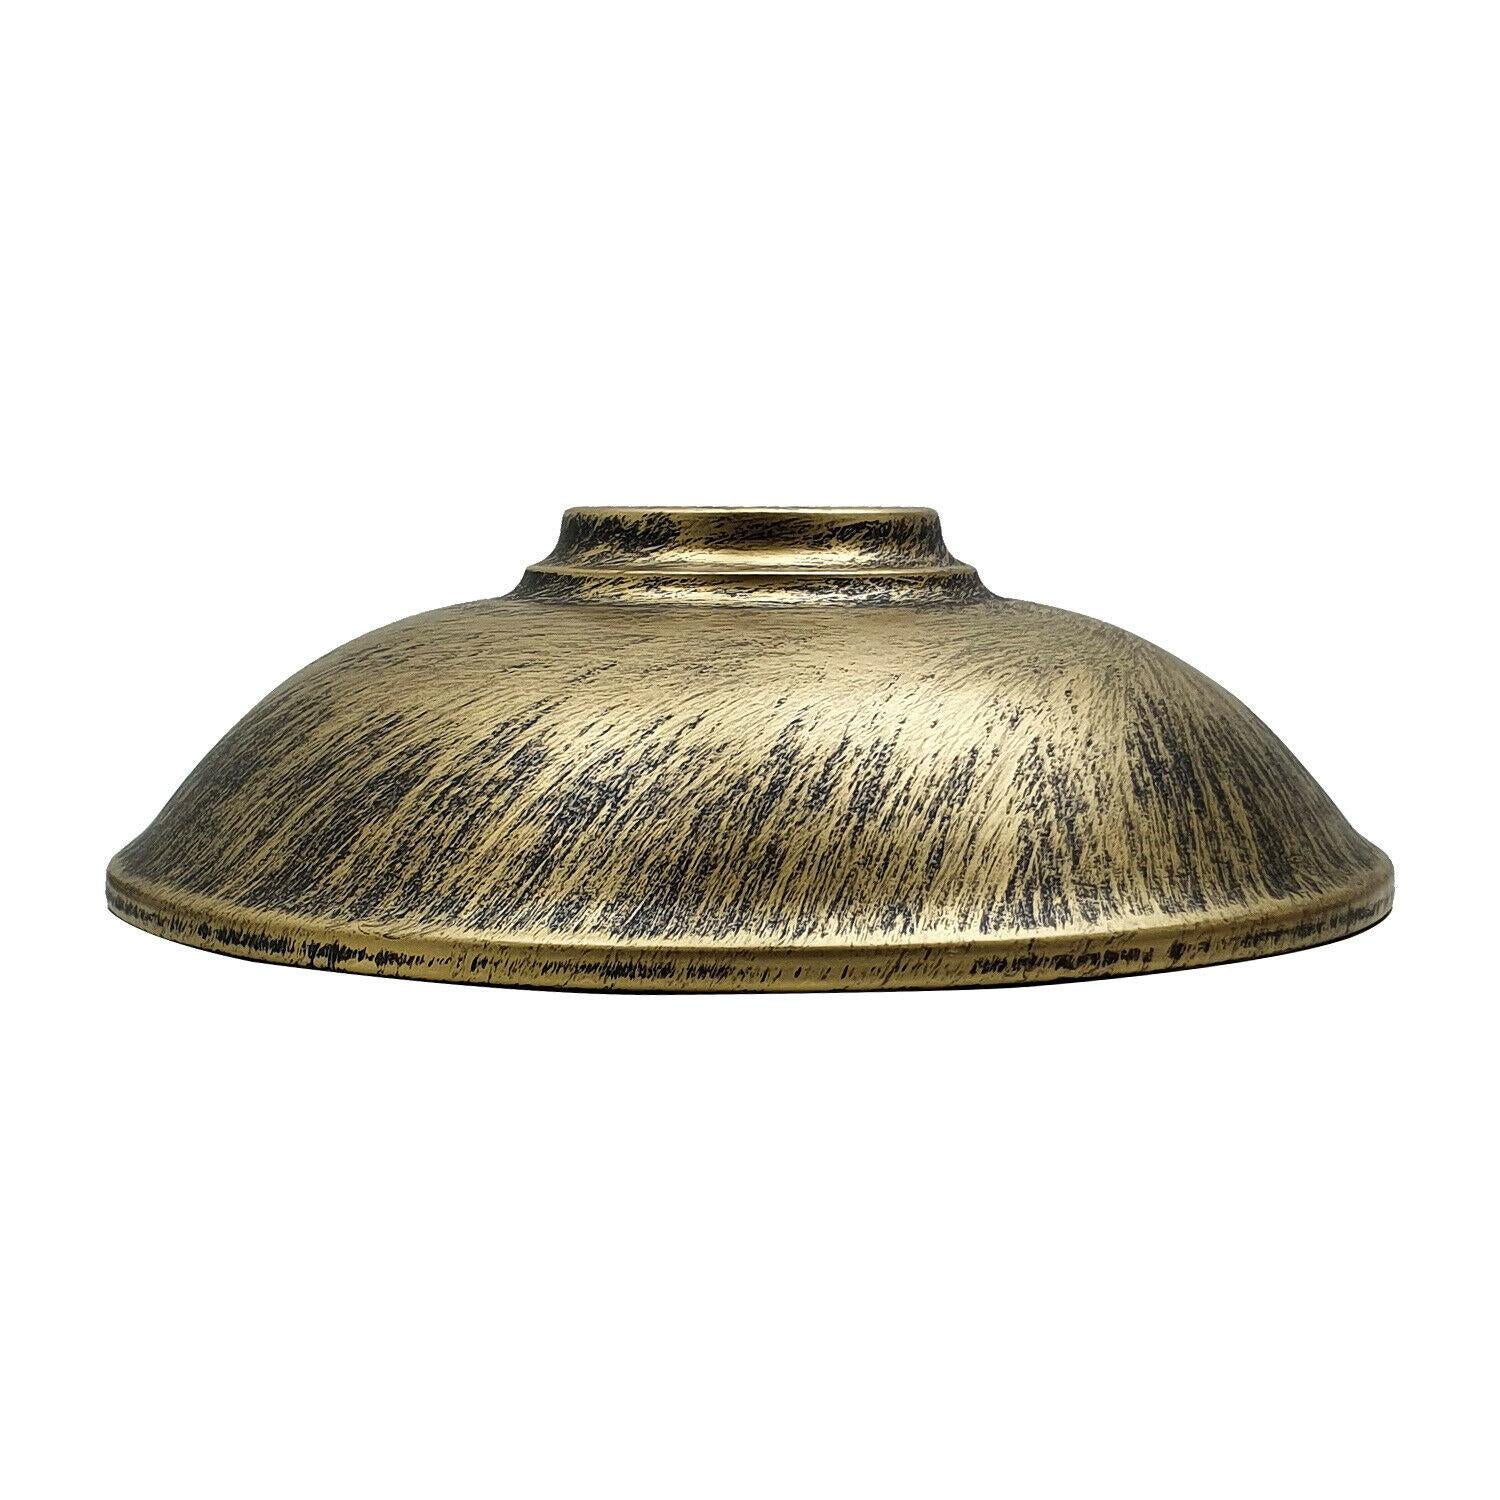 Brass lamp shade